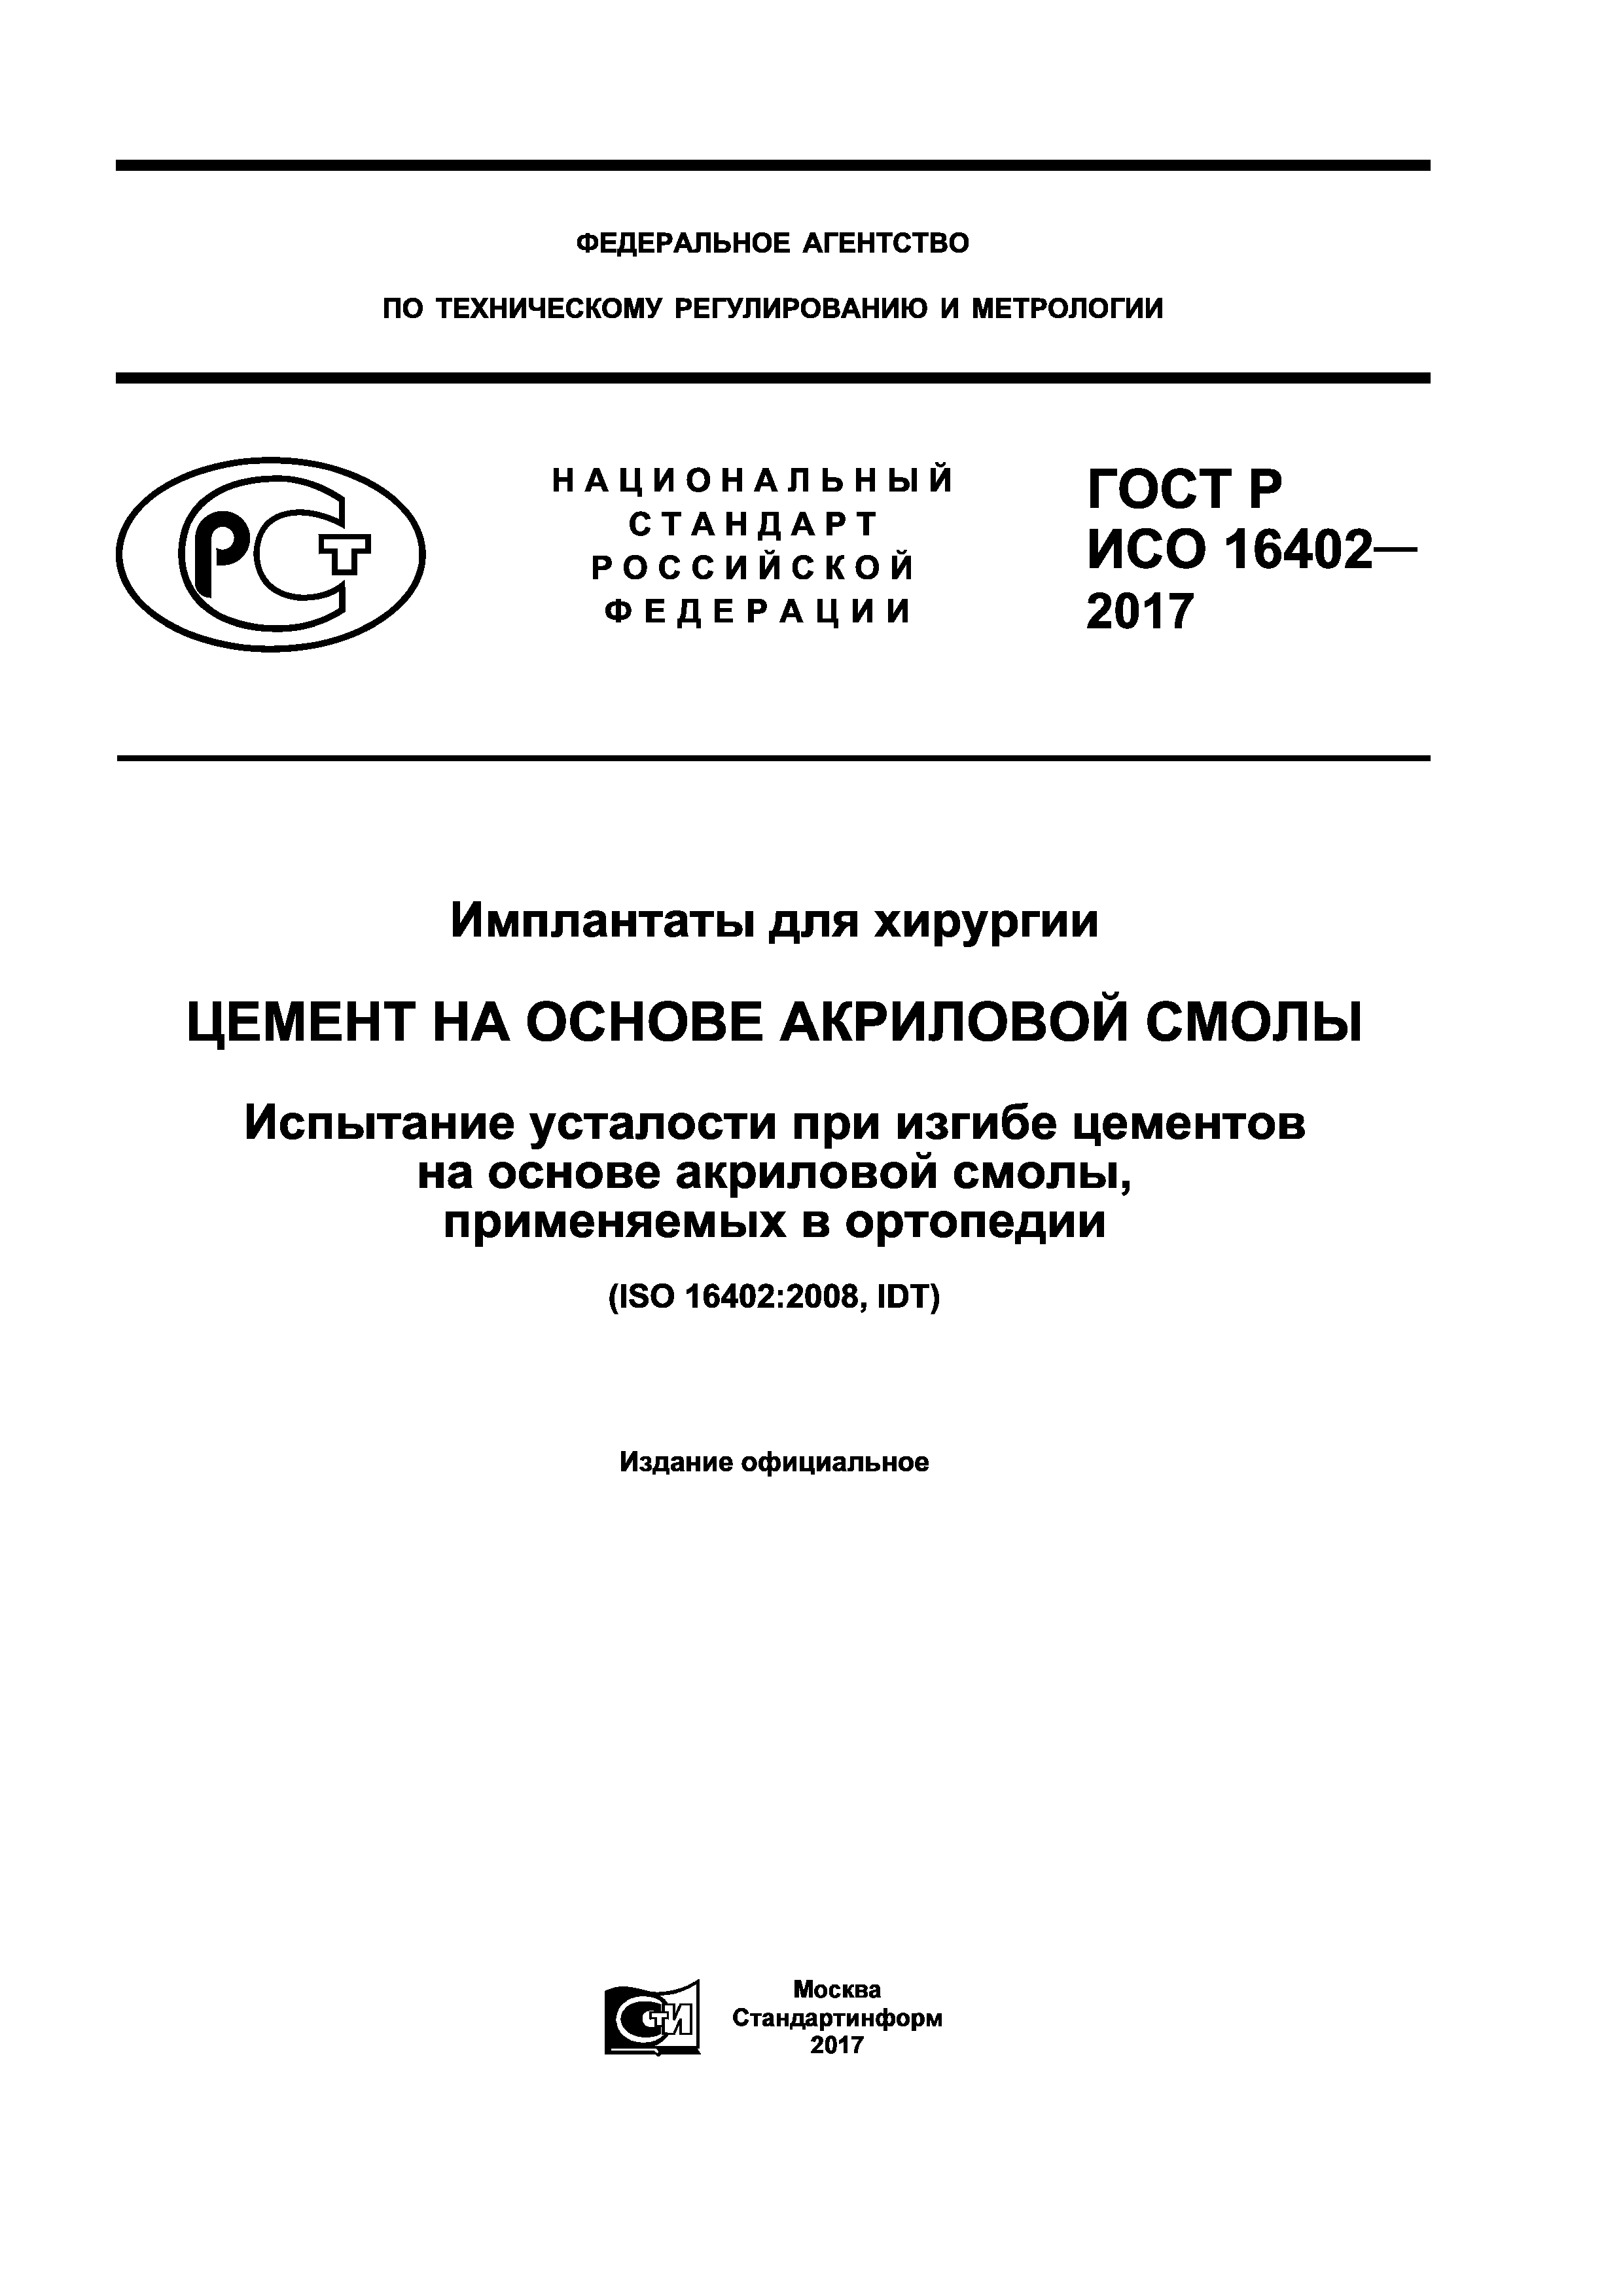 ГОСТ Р ИСО 16402-2017